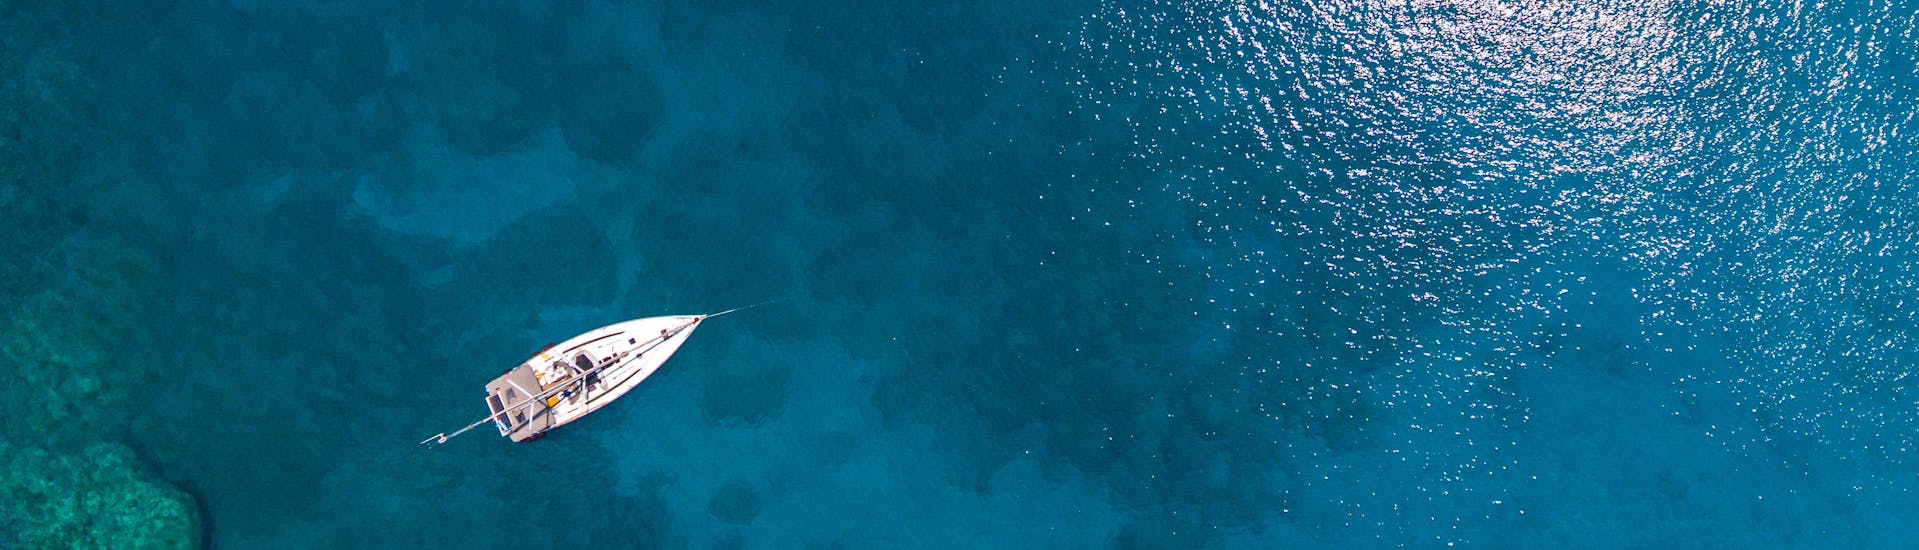 Zeilboot in het midden van de zee tijdens een dagtocht